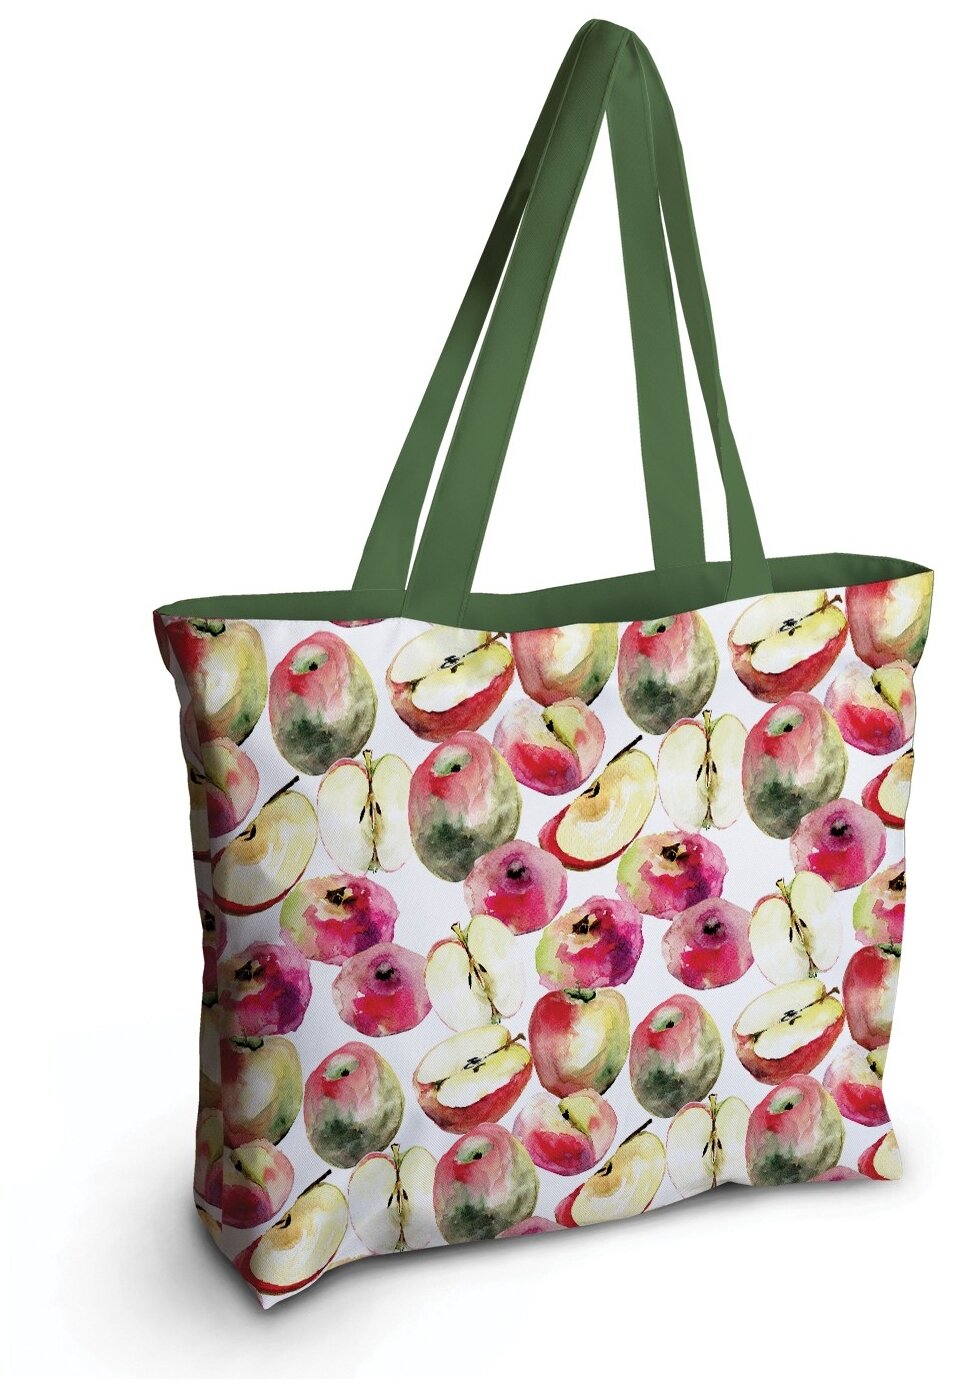 Текстильная женская сумка JoyArty "Живописные яблоки" на молнии для пляжа и фитнеса